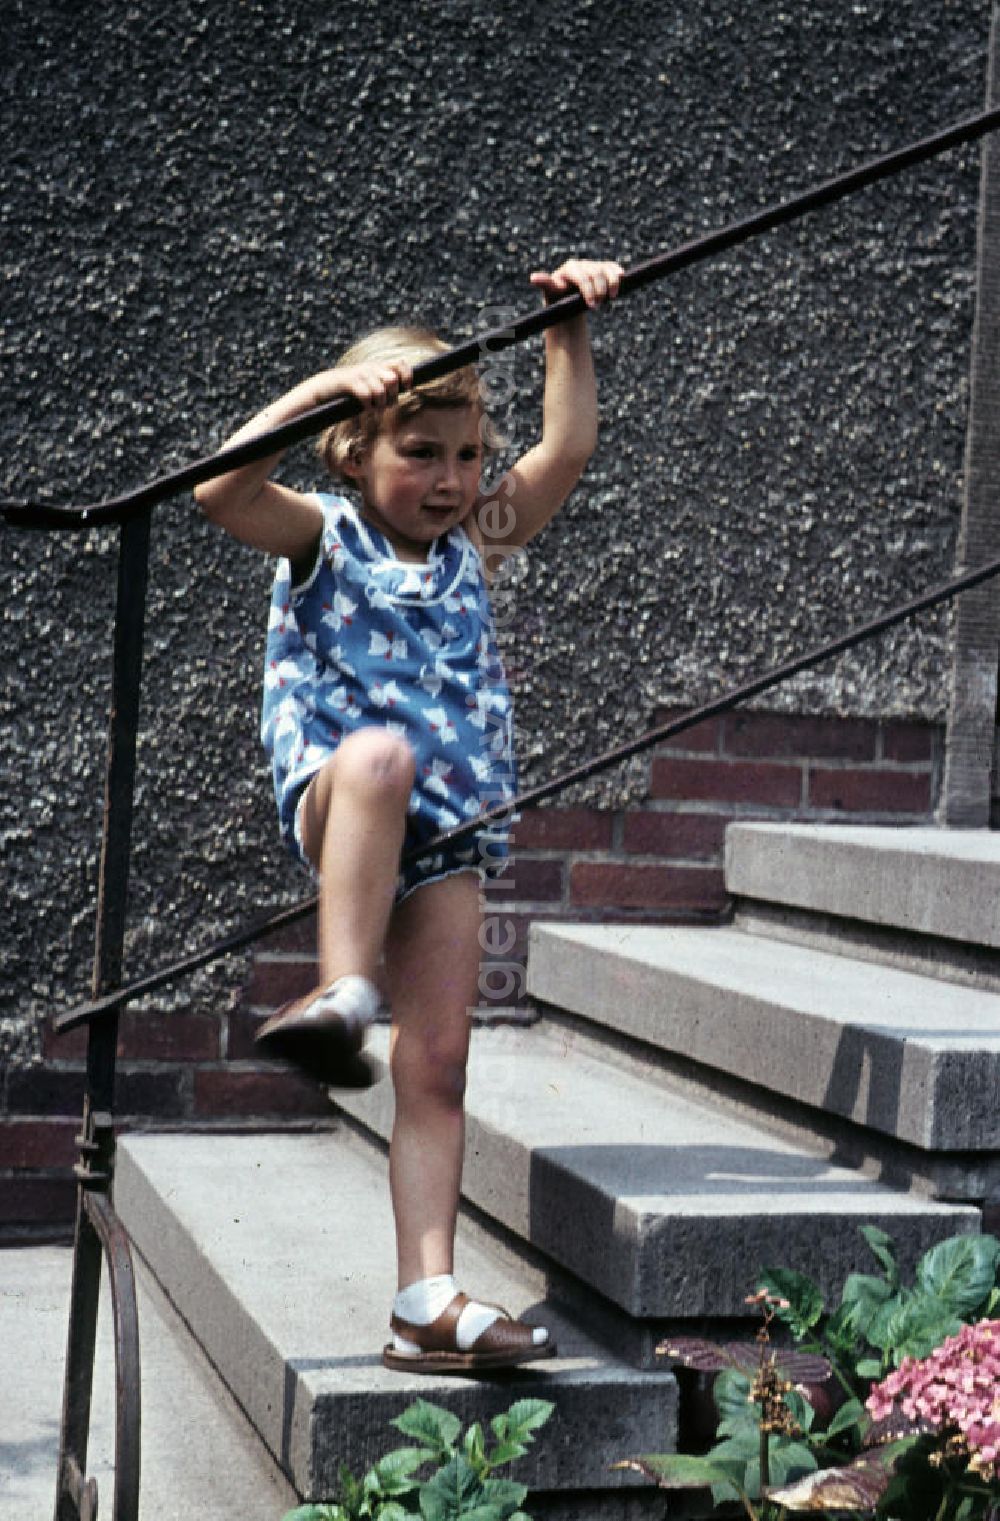 Schkopau: Mädchen klettert am Treppengeländer. Girl climbing on the banister.